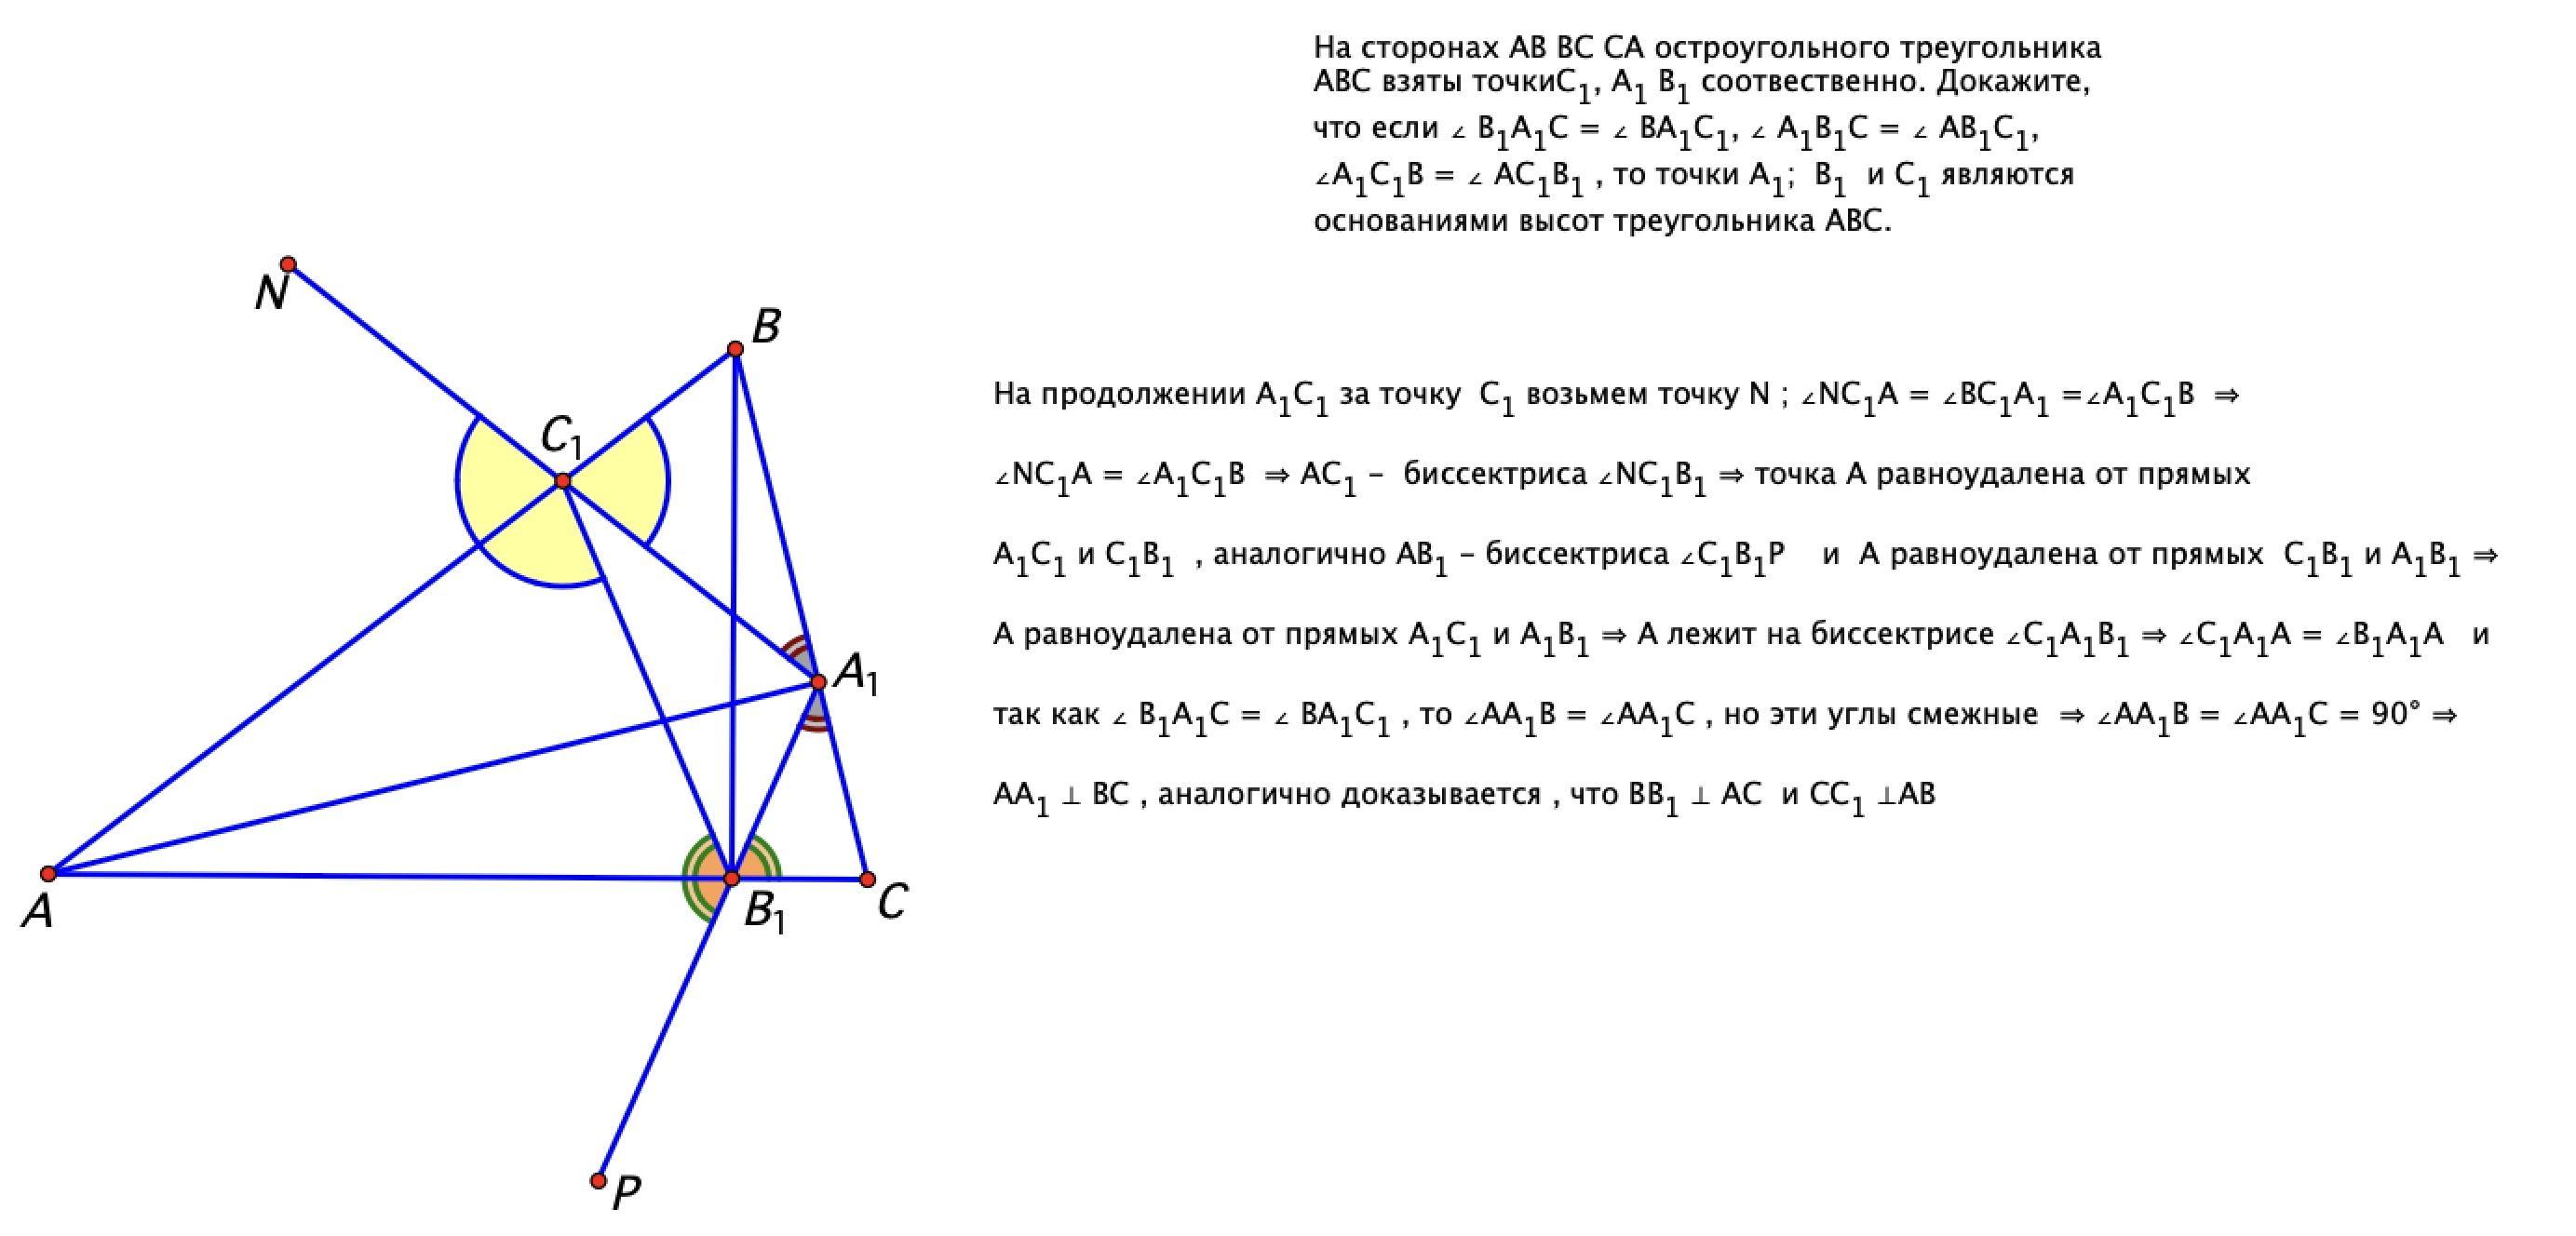 Серединный перпендикуляр к стороне остроугольного треугольника. Углы остроугольного треугольника. Высоты bb1 и cc1 остроугольного треугольника. Уравнение остроугольного треугольника. Соотношение сторон остроугольного треугольника.